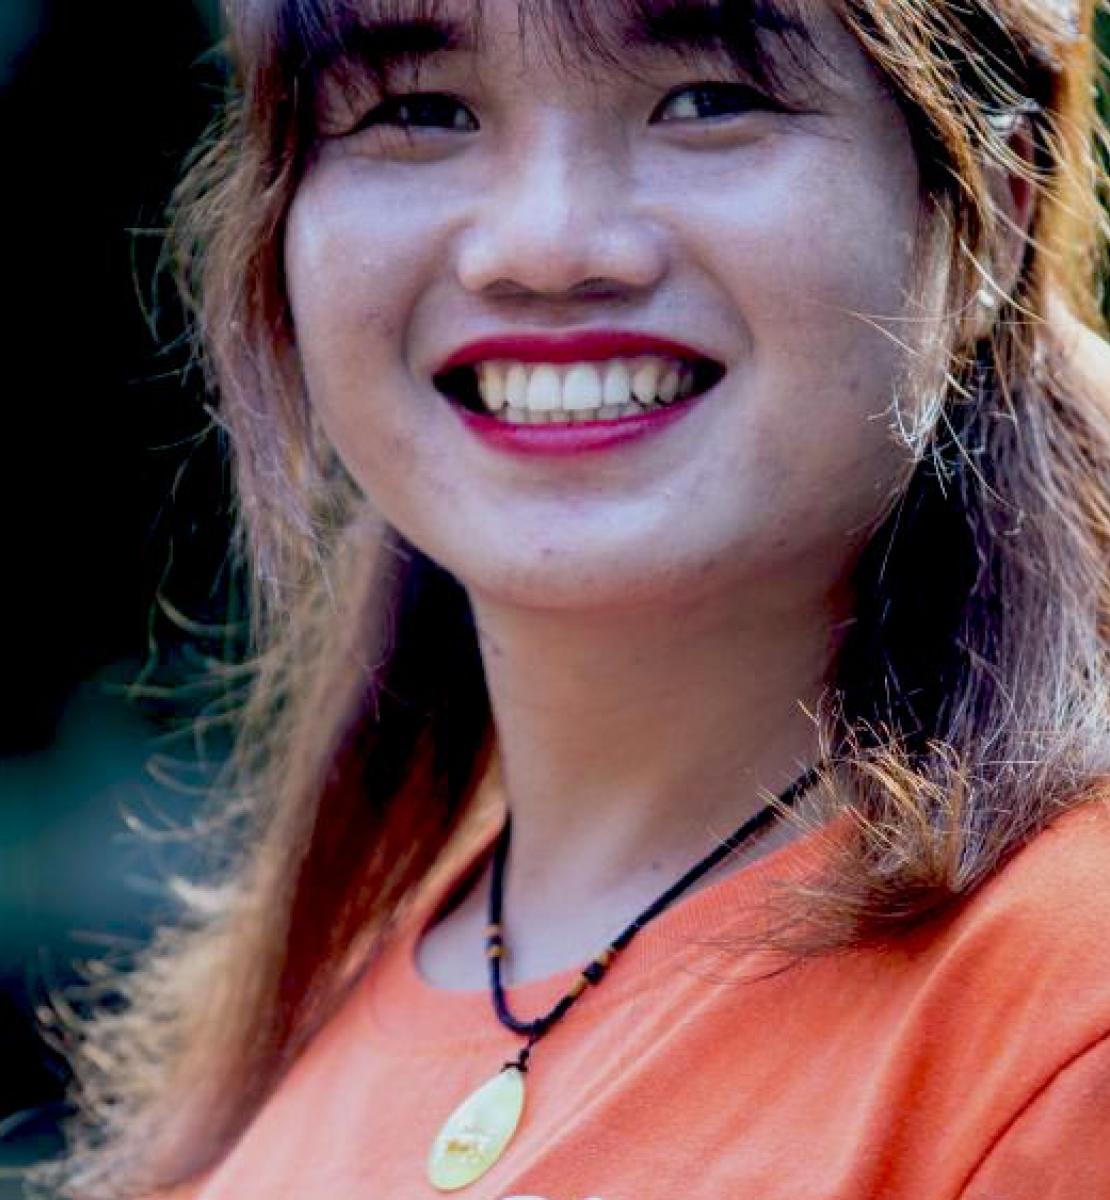 لقطة مقرّبة لكيم ثوي، ناشطة متحولة جنسيًا من فيتنام.